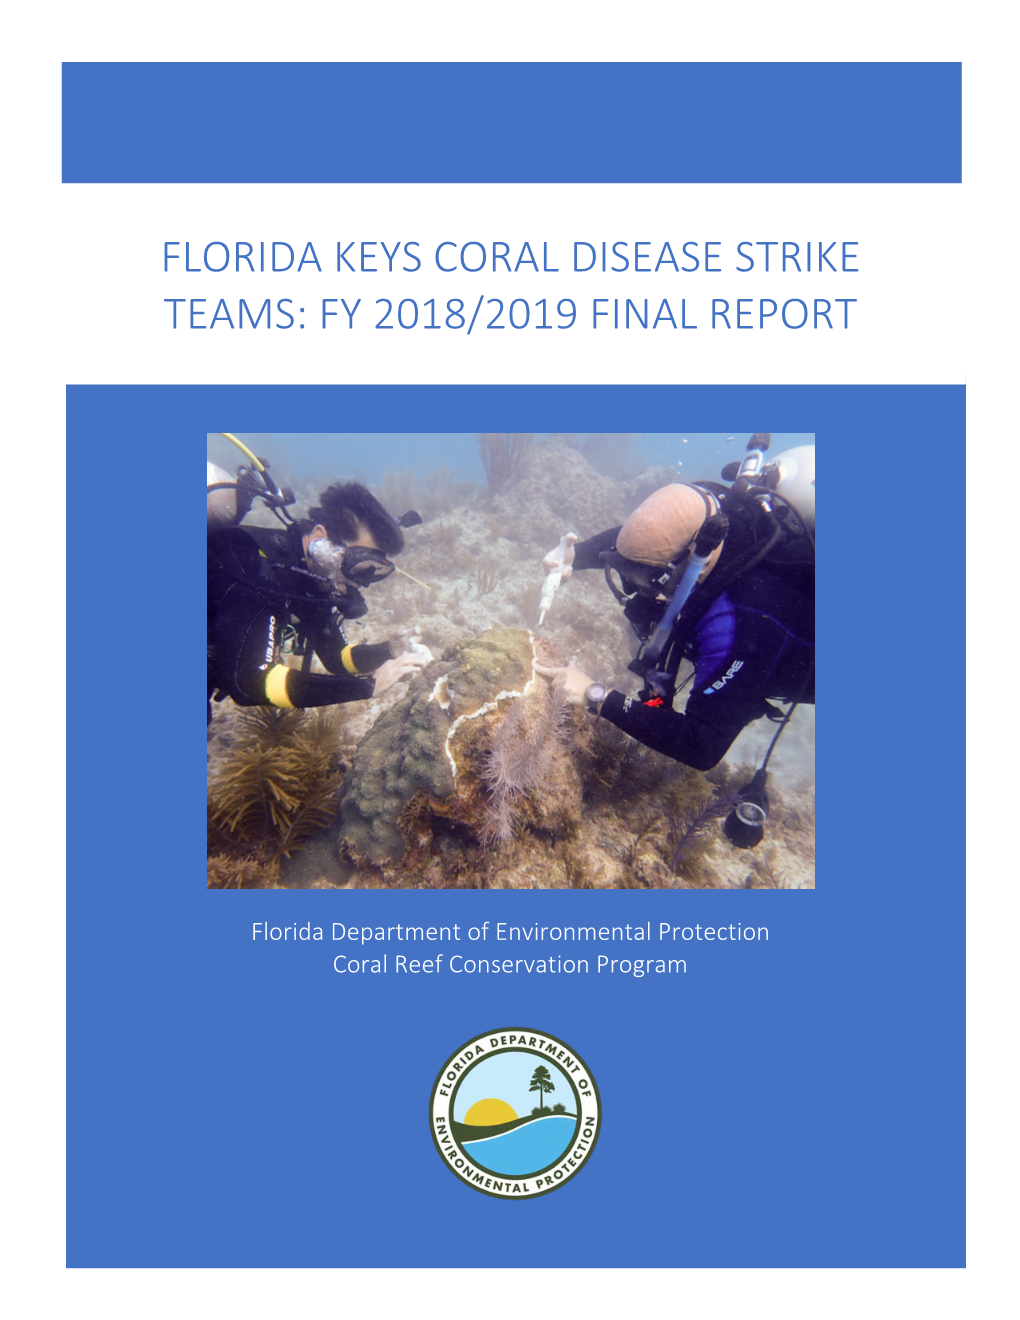 Florida Keys Coral Disease Strike Teams: Fy 2018/2019 Final Report